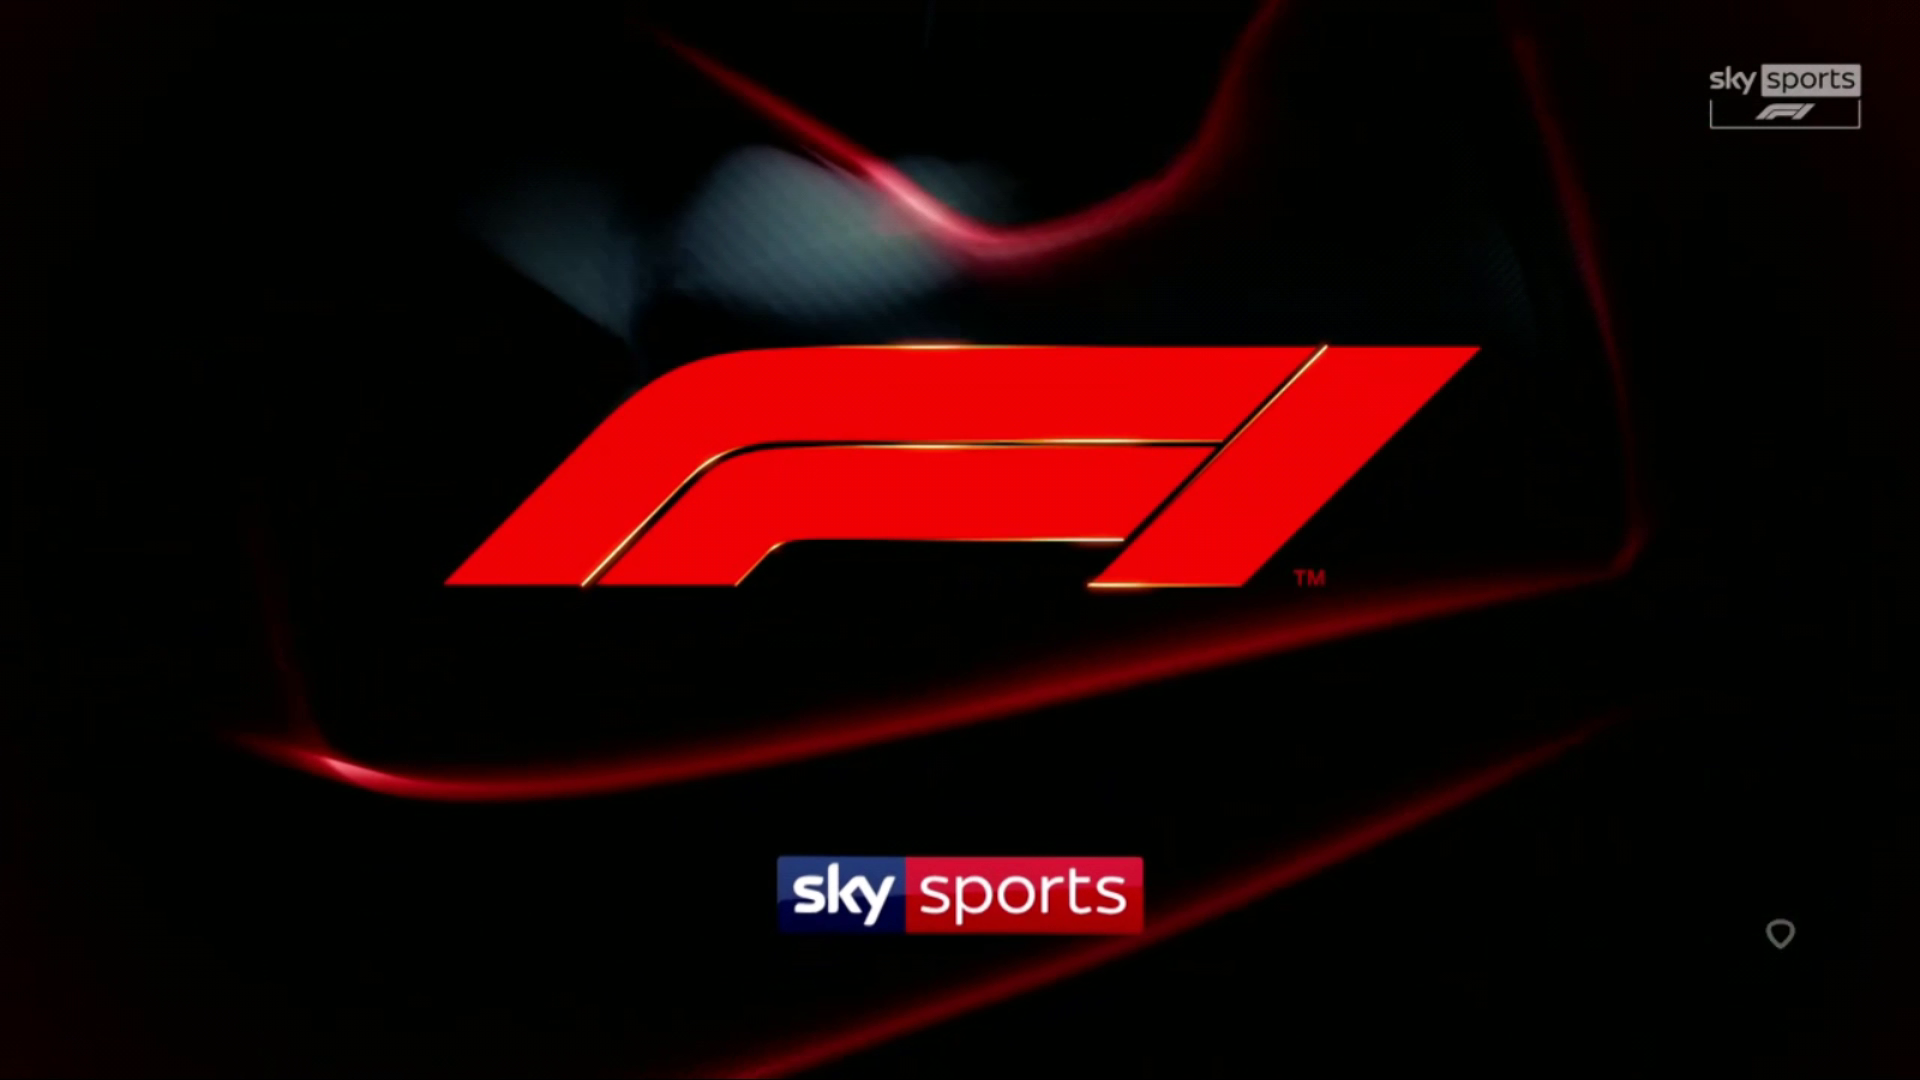 Sky Sports Formule 1 - 2021 Race 16 - Turkye - Kwalificatie - 1080p